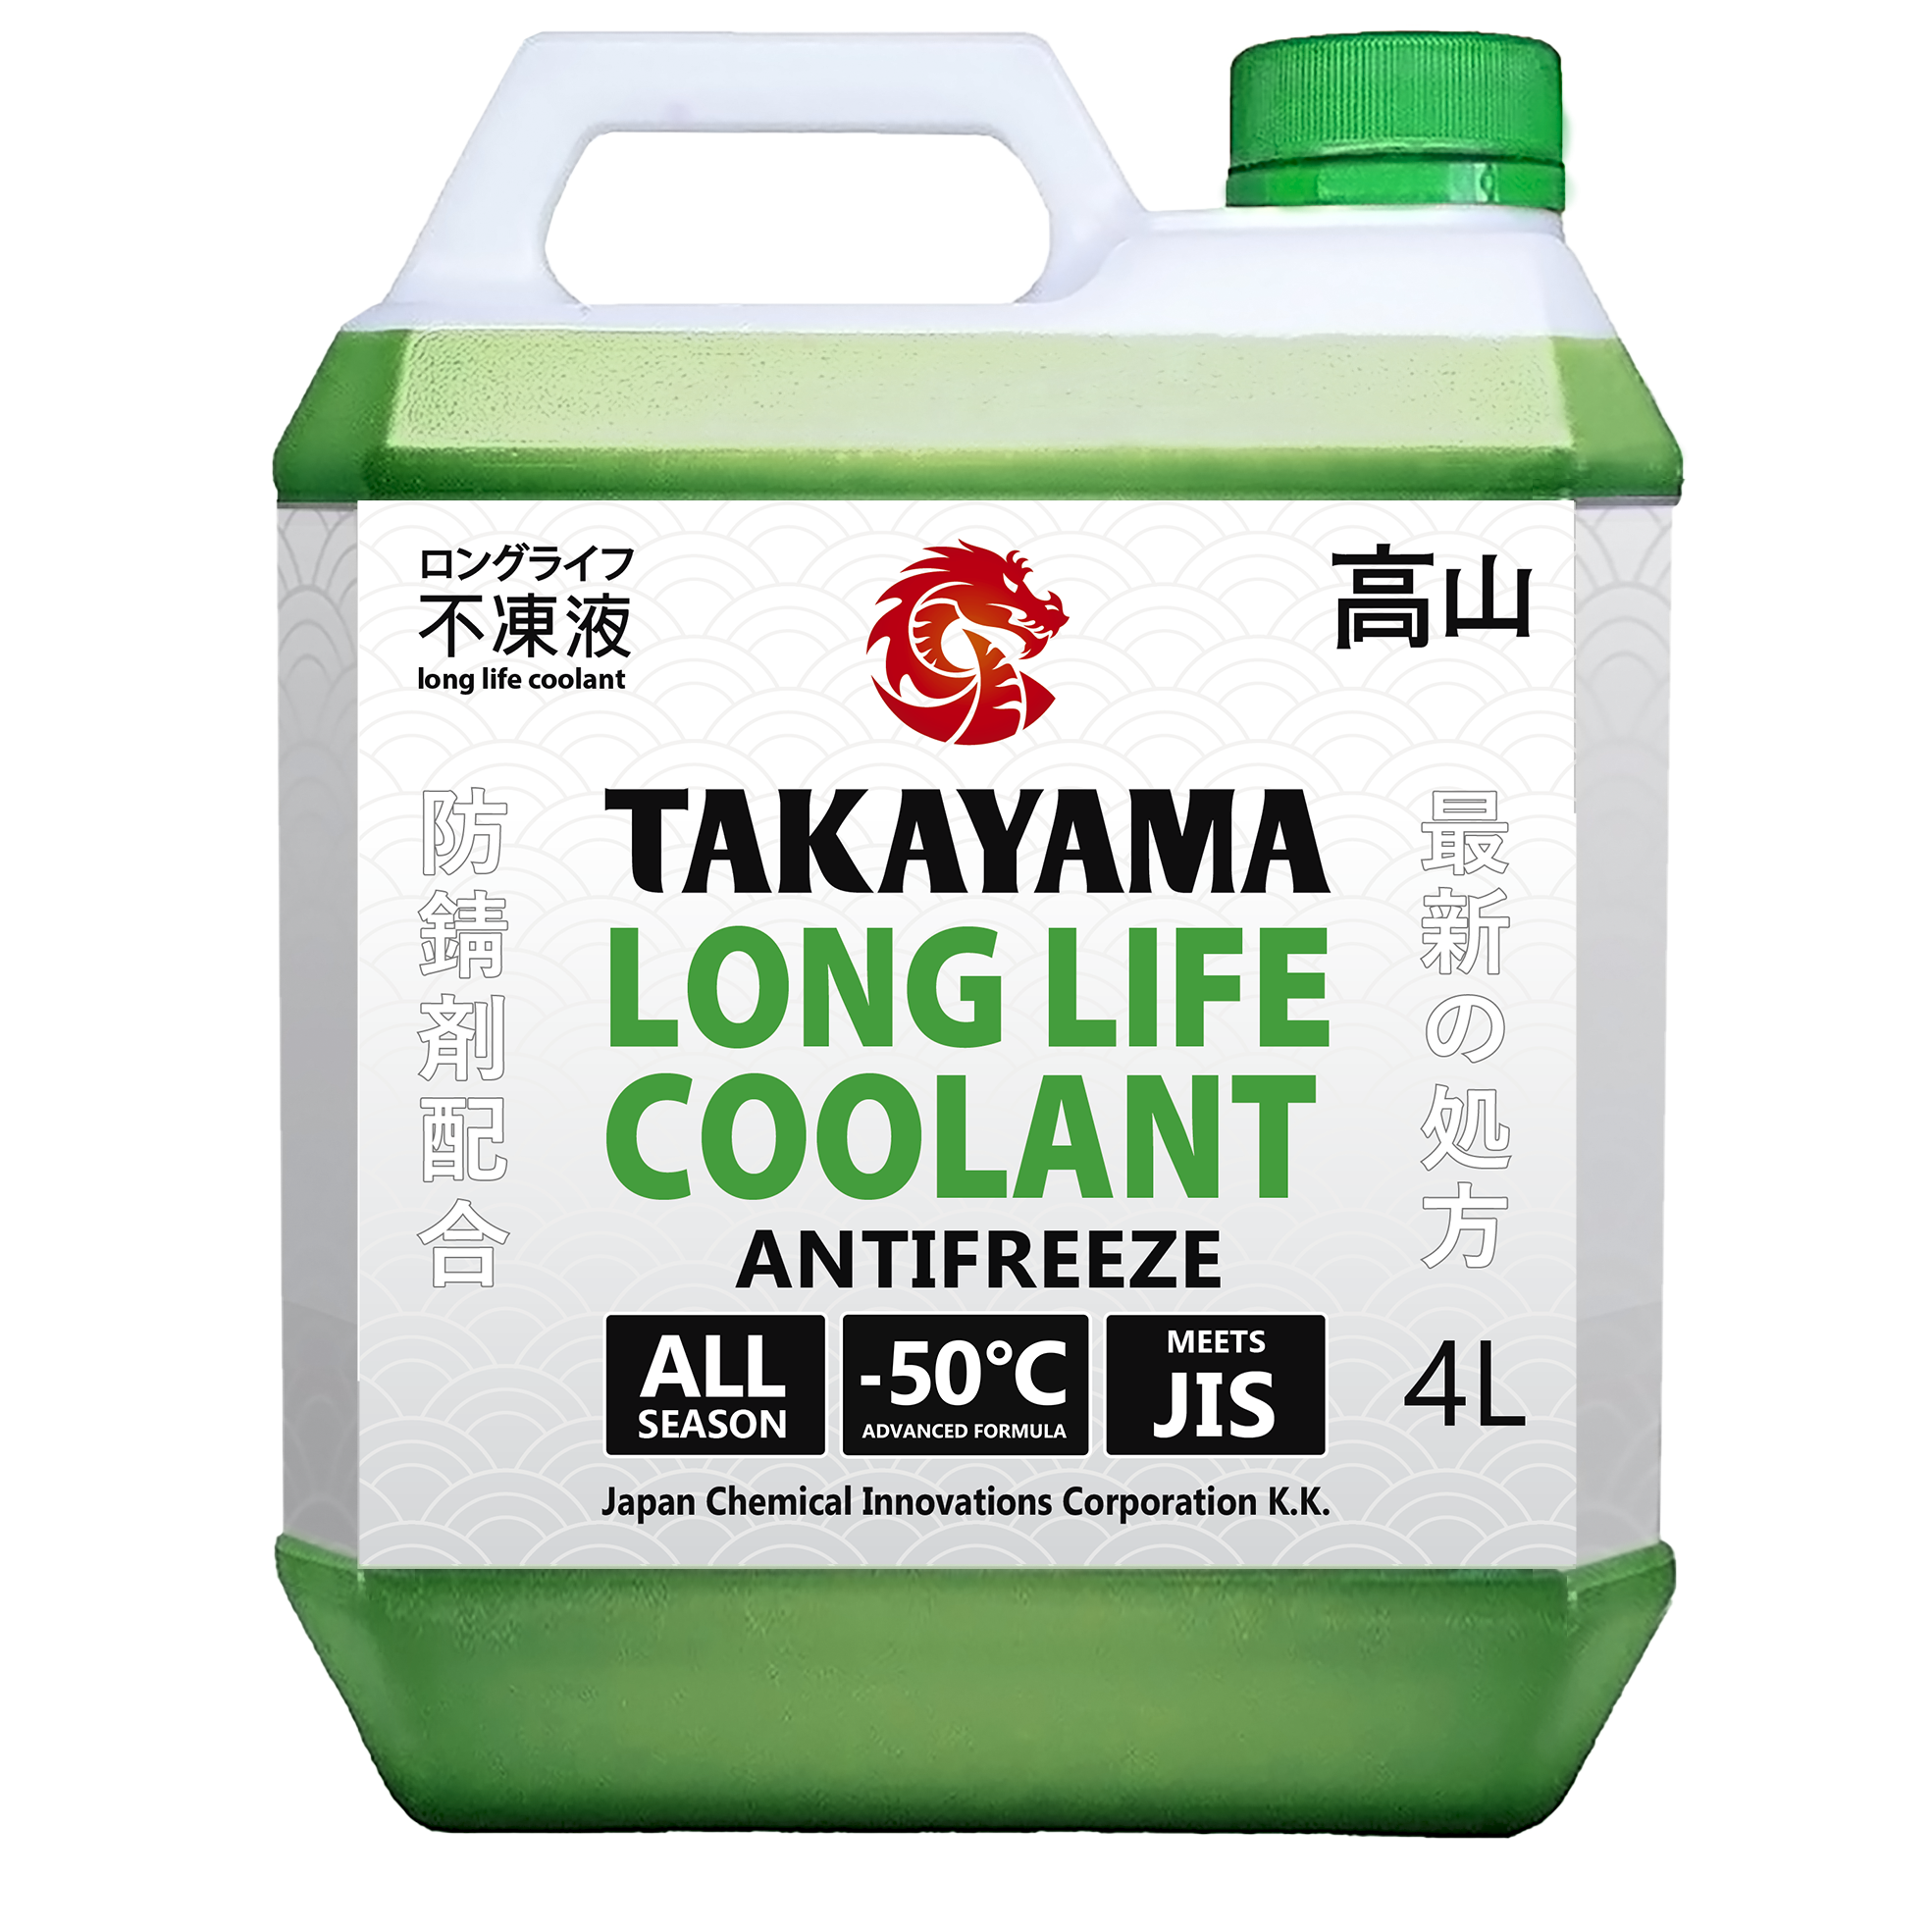 фото Антифриз takayama long life coolant green (-50) зеленый 4 л